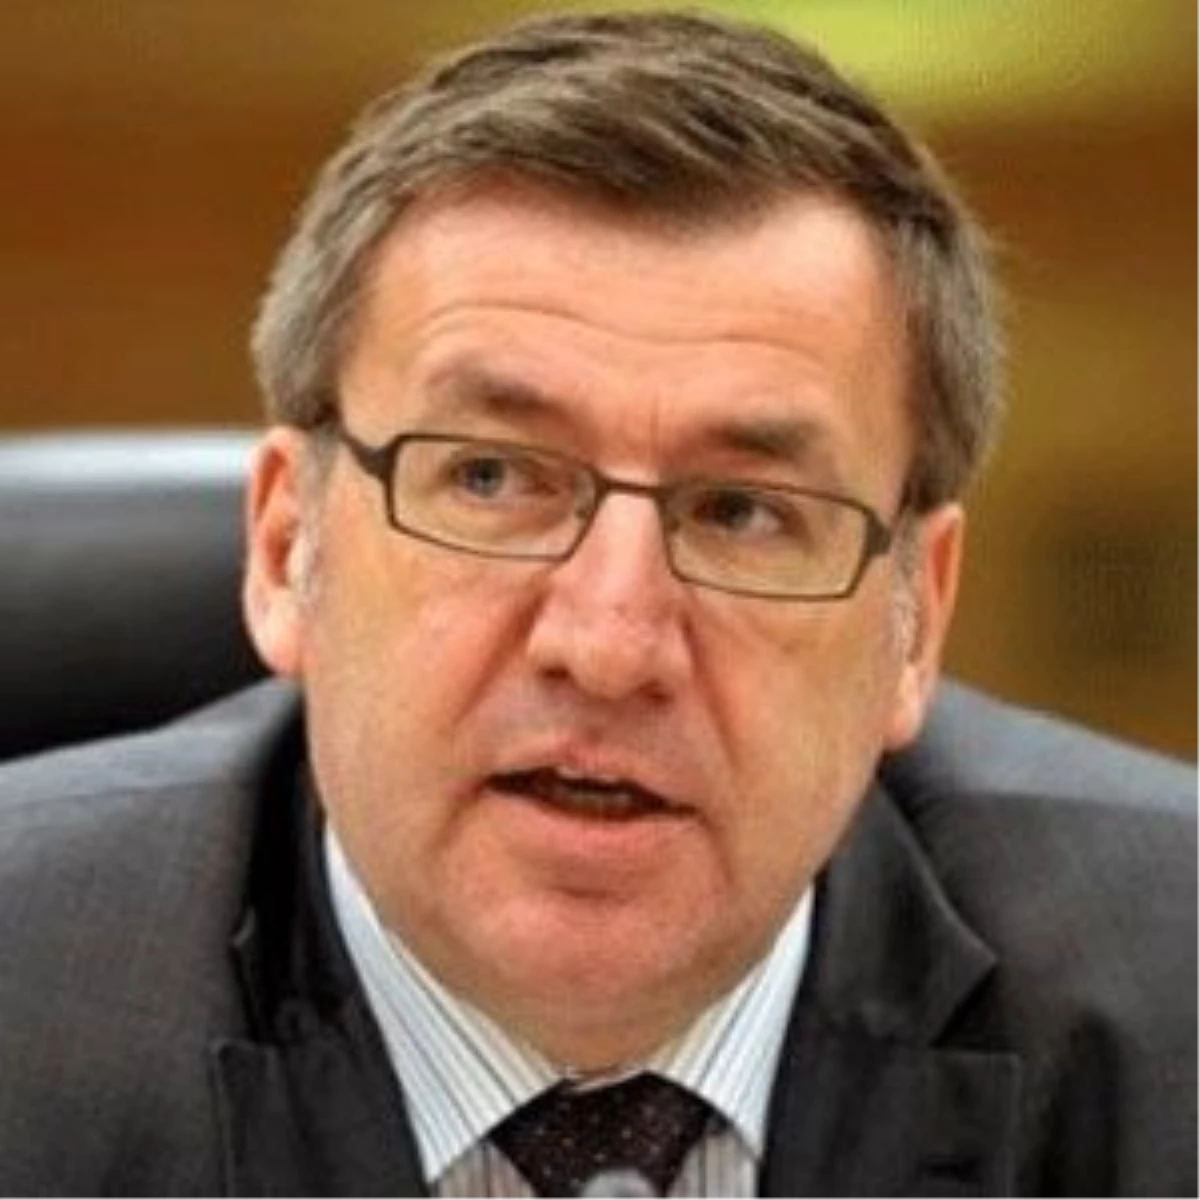 Belçika Maliye Bakanı Vanackere İstifa Etti